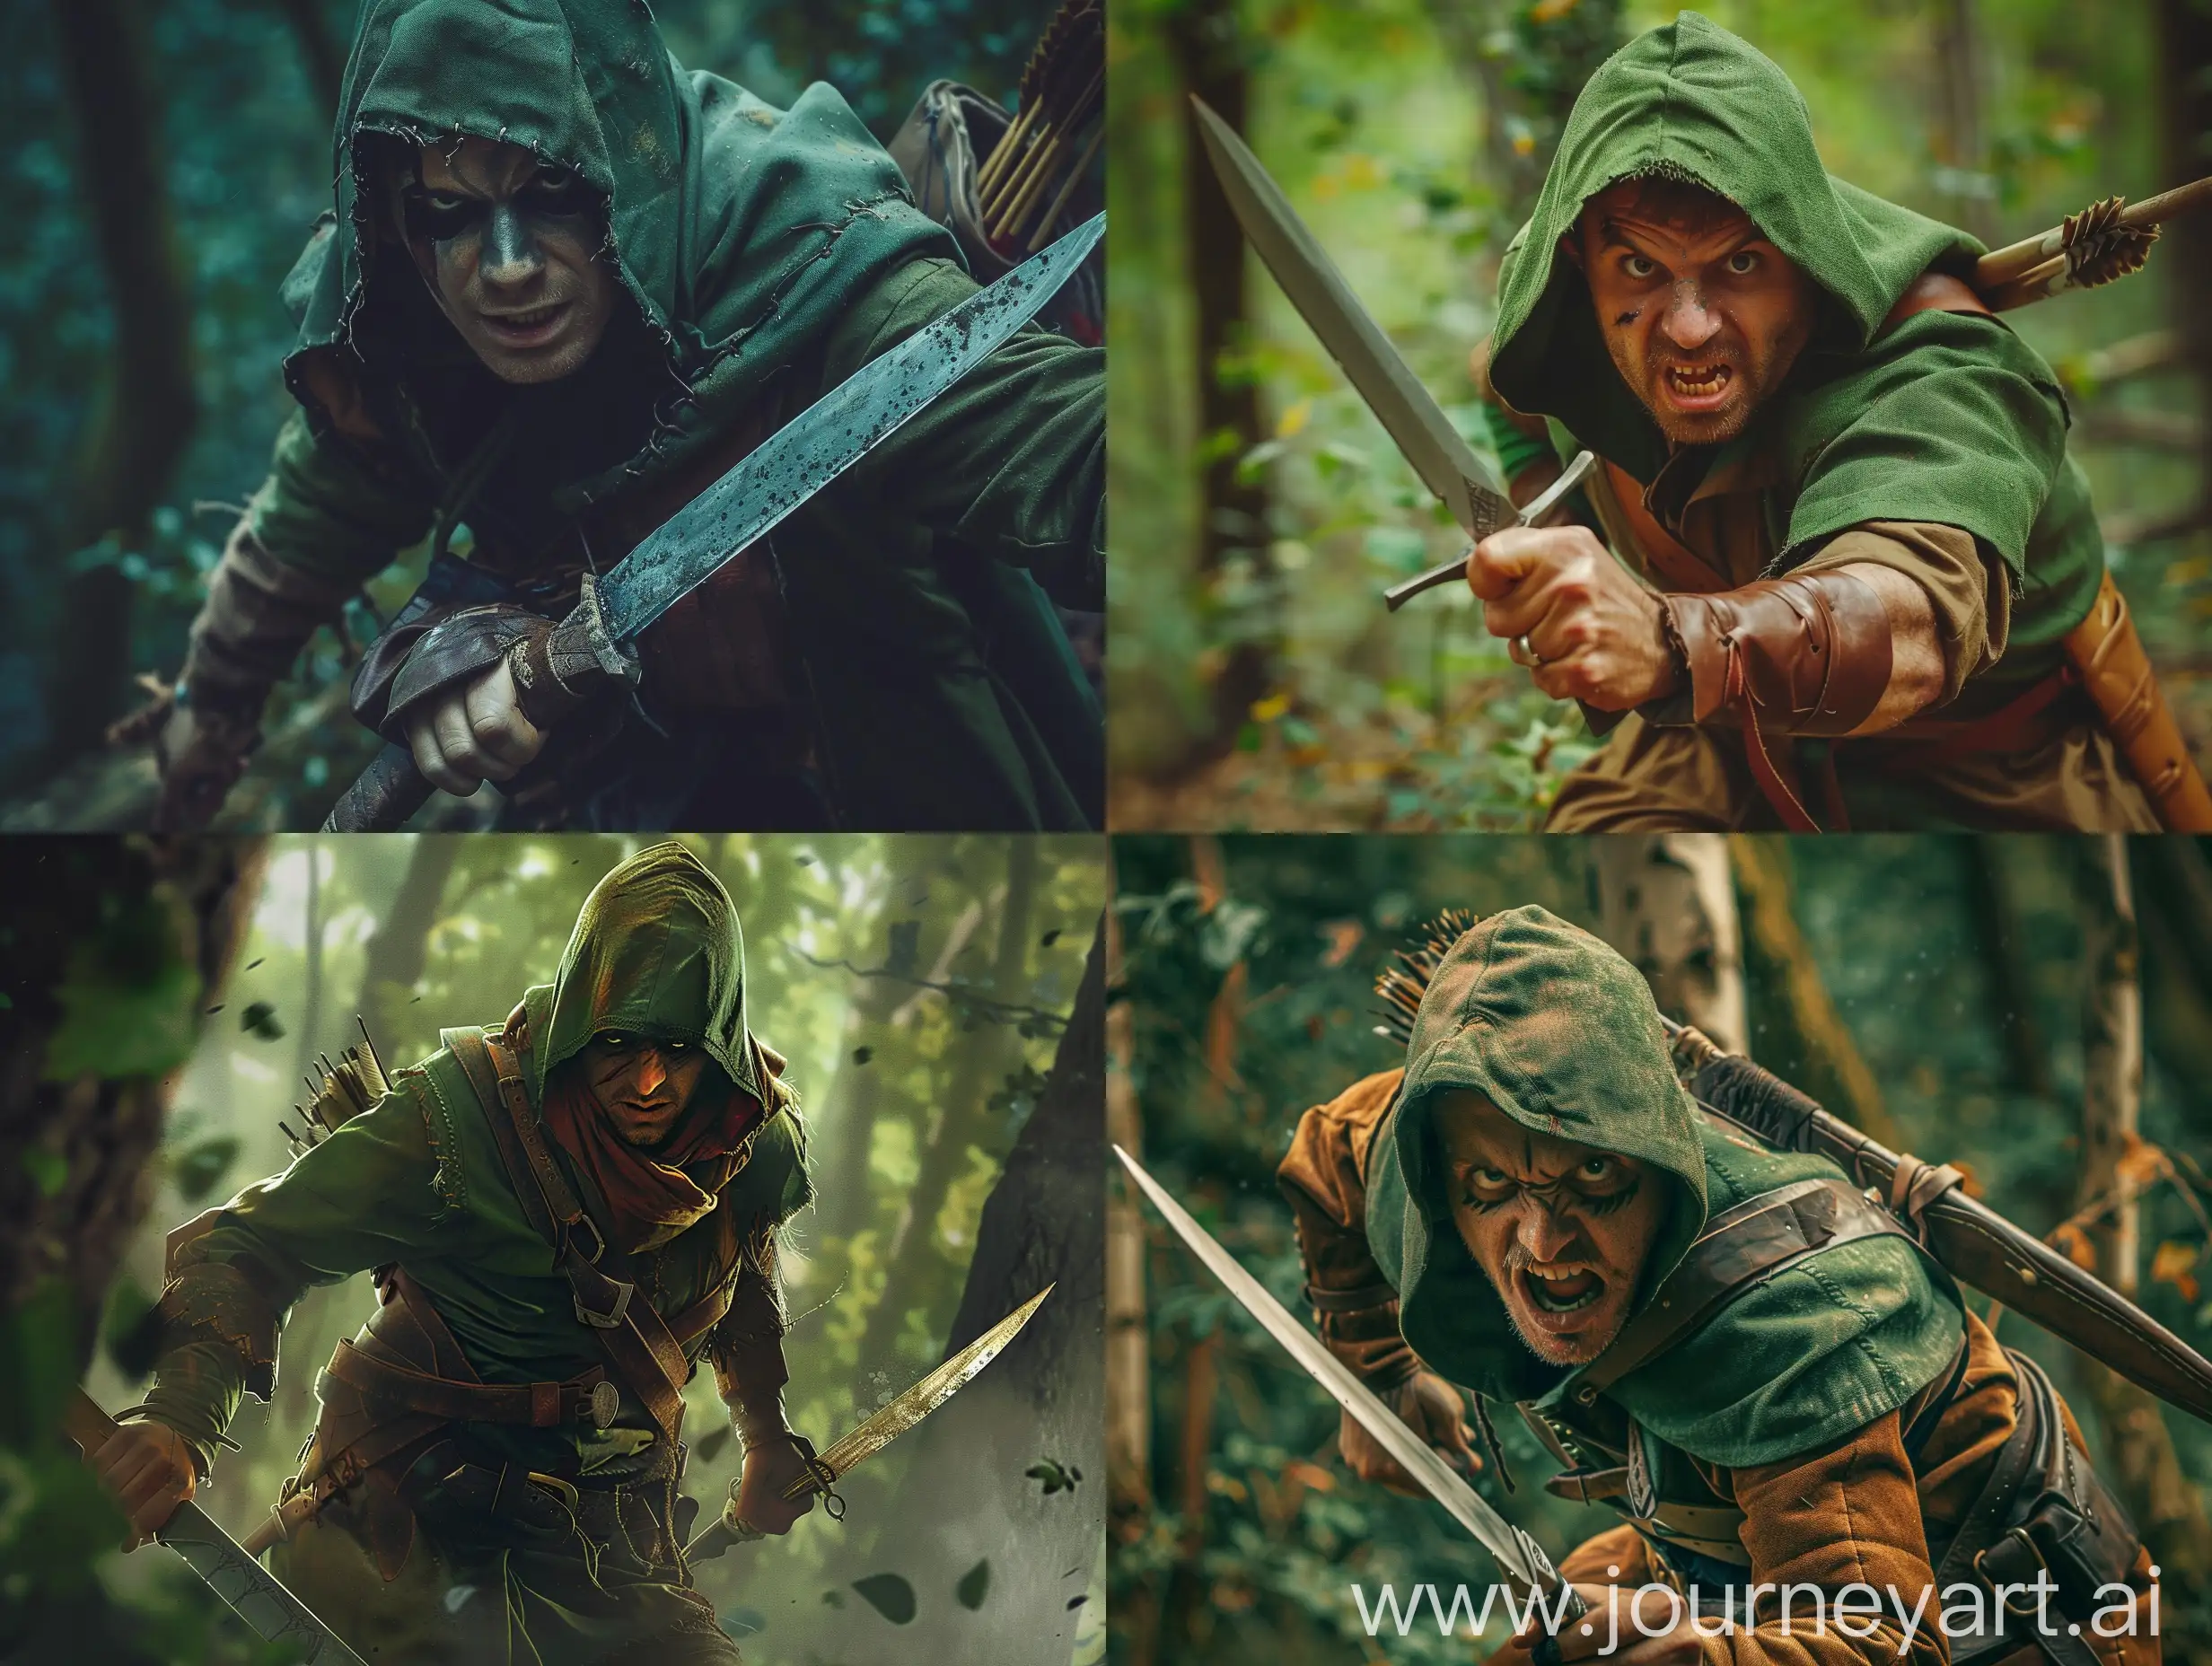 Fierce-Robin-Hood-Hunter-with-Knife-in-Dark-Forest